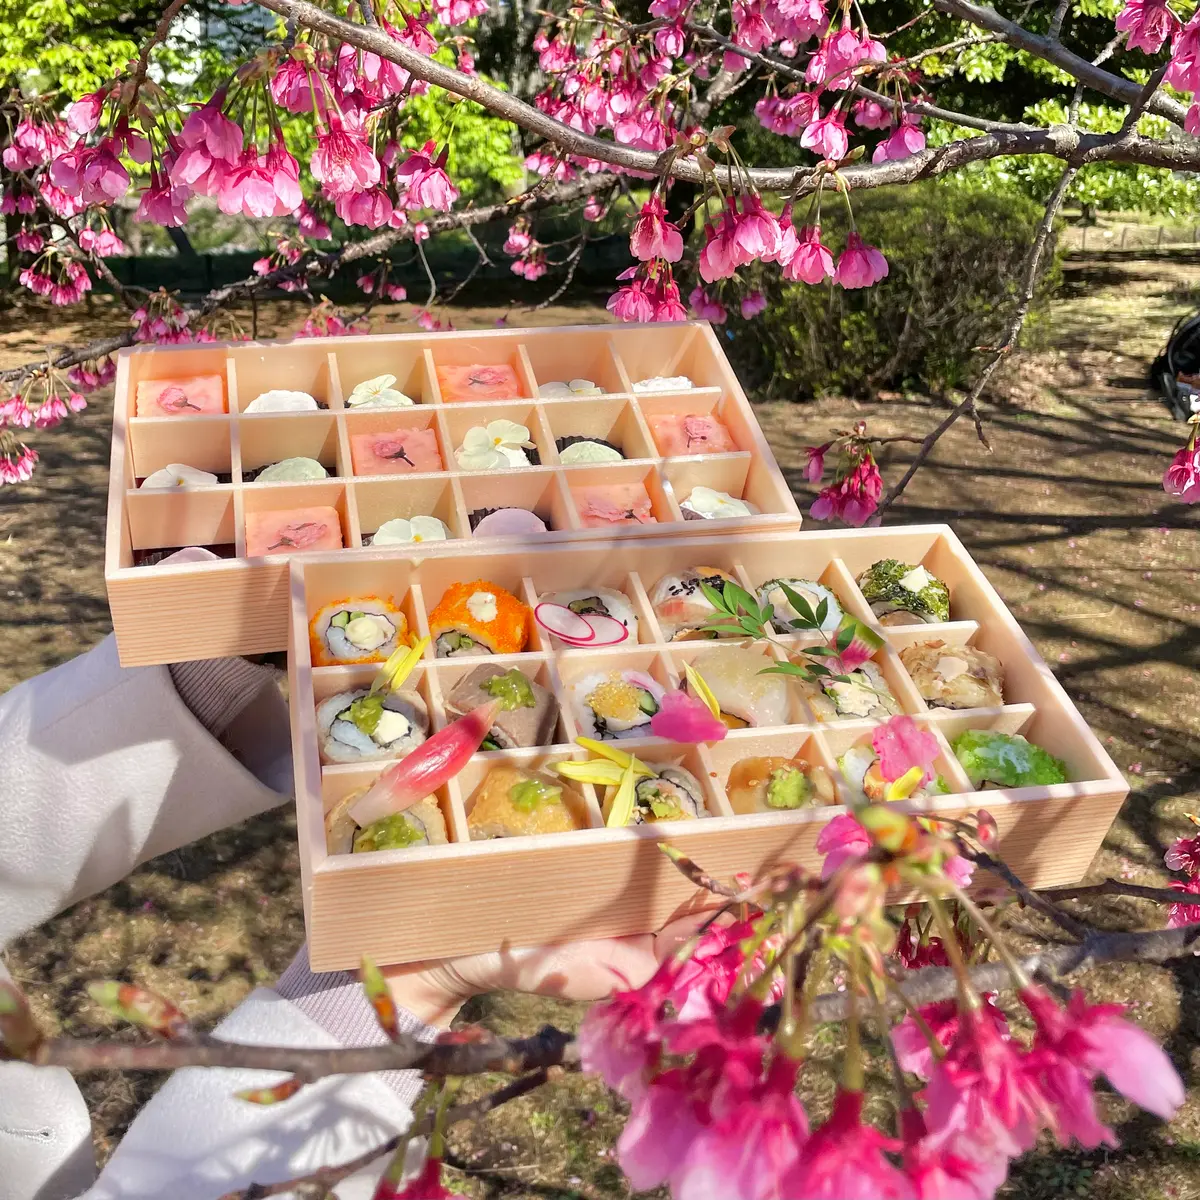 銀座「SHARI THE TOKYO SUSHI BAR」のロール寿司とスイーツが並ぶ“お花畑弁当”で楽しむ春のお花見